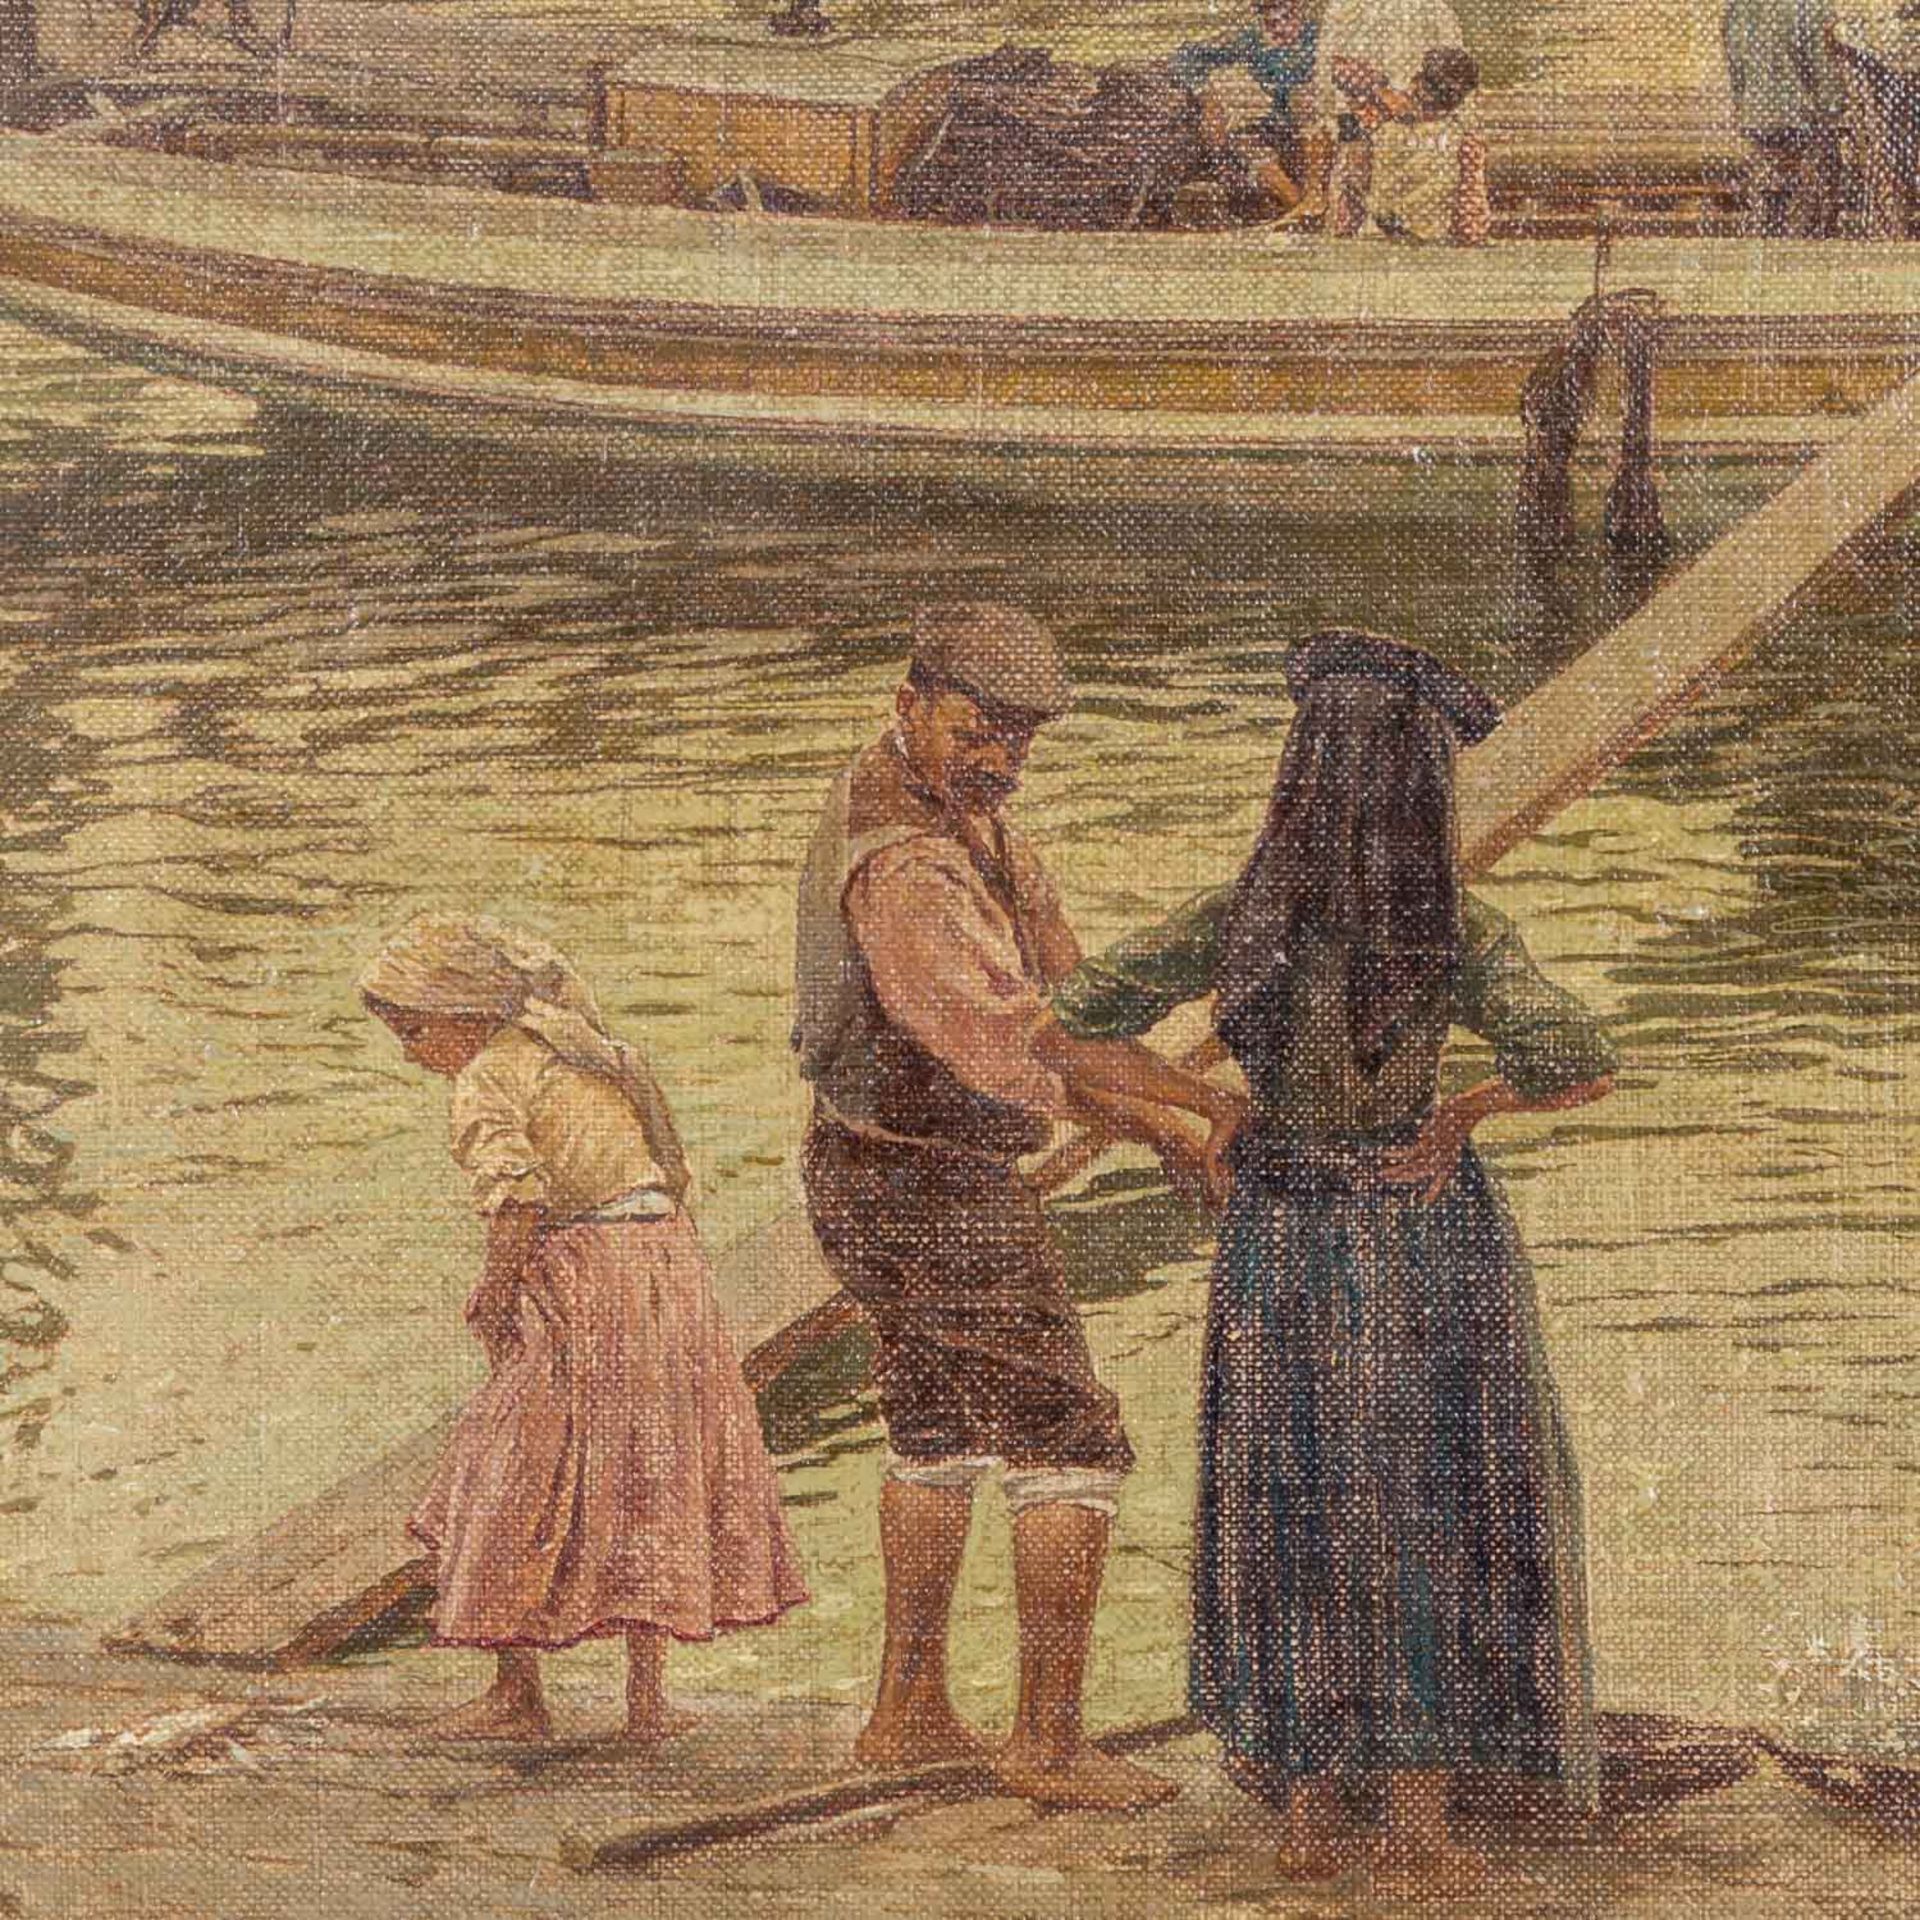 MEYER-WALDECK, KUNZ (1859-1953), "Muschelsammlerinnen und Segelschiffe am Strand", - Bild 4 aus 7